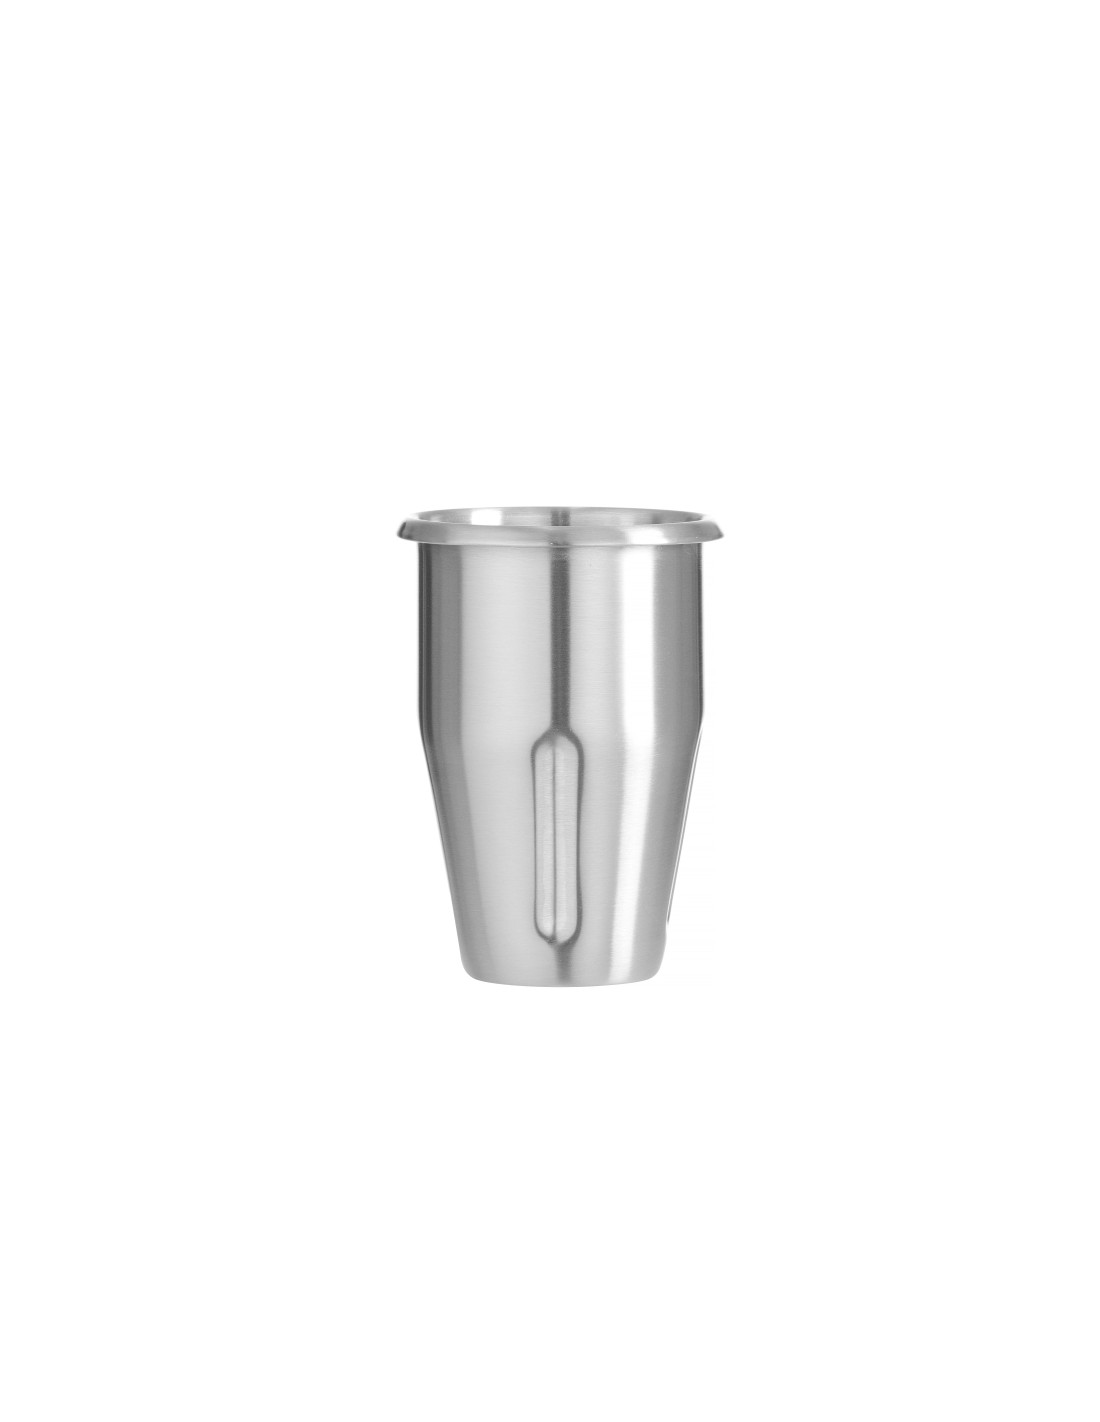 Bicchiere in acciaio inox - Per frullatori Milkshake - Design by bronwasser